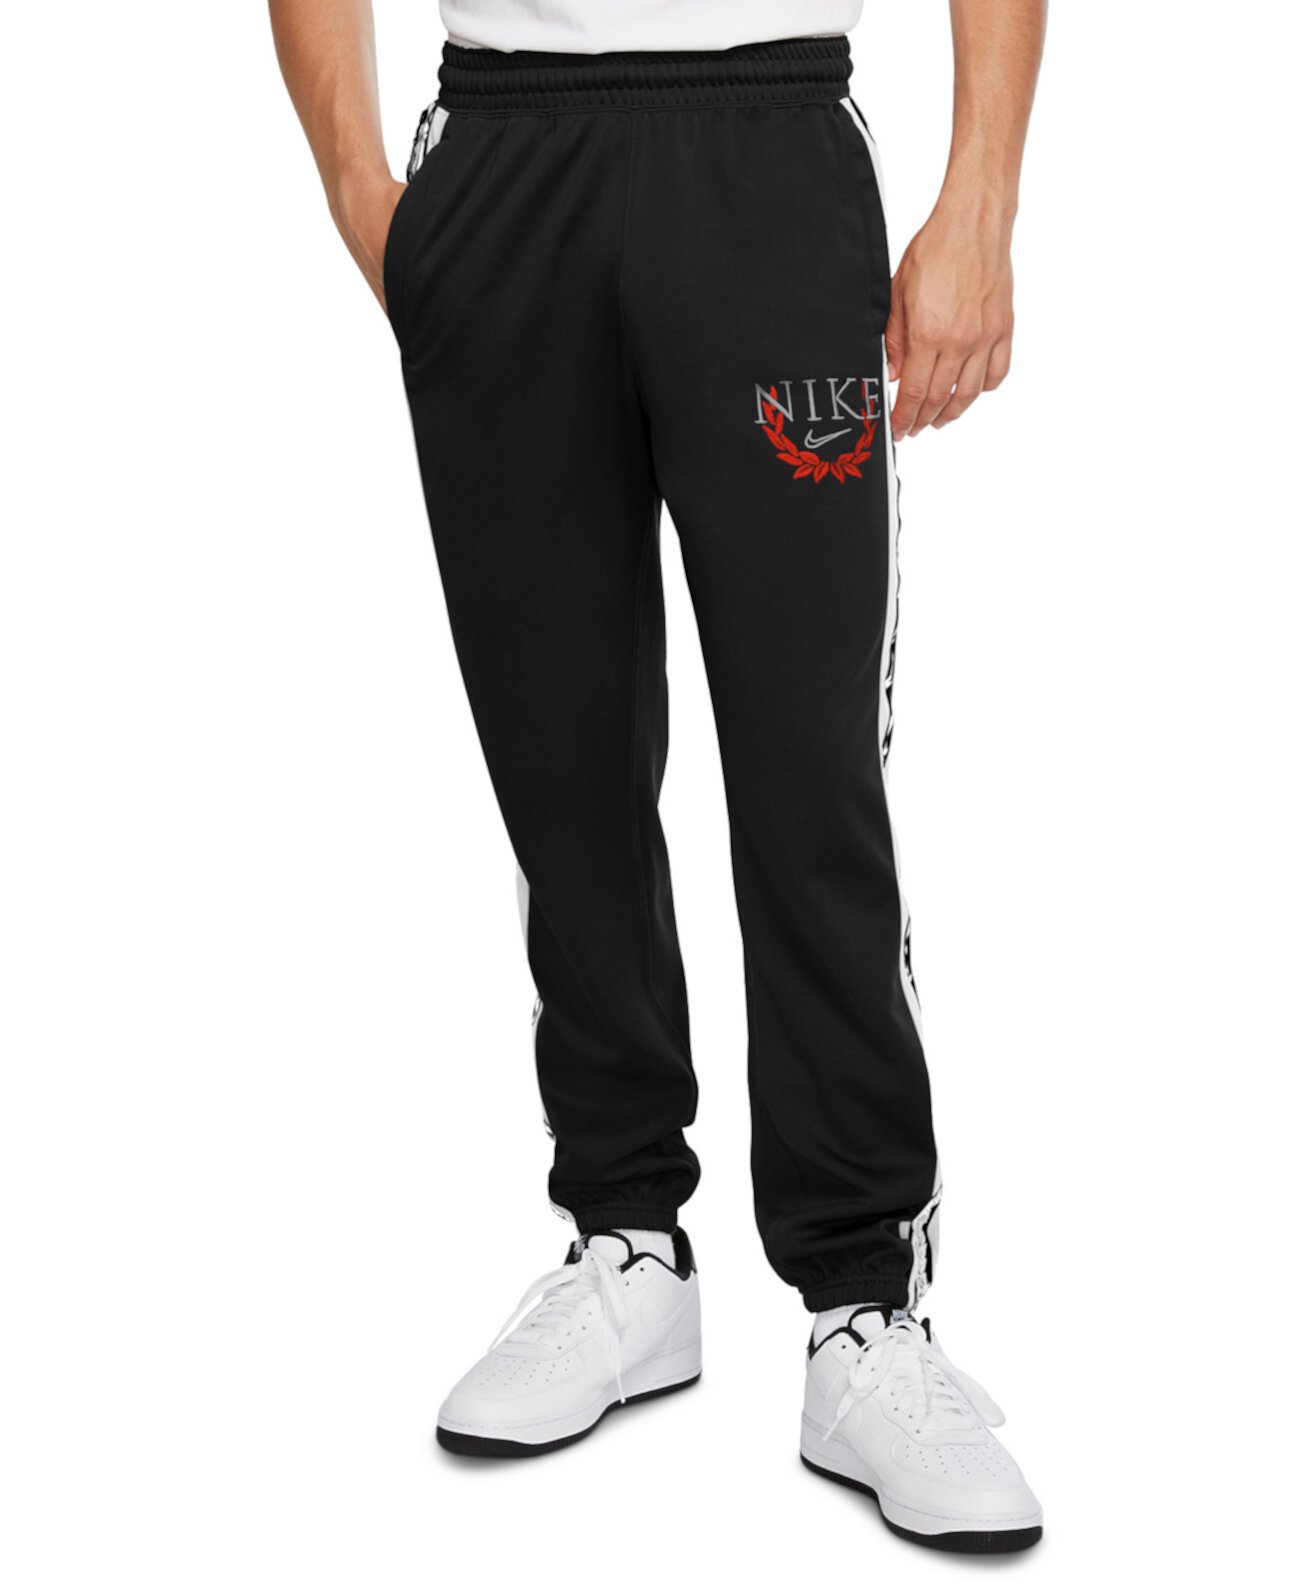 Мужские баскетбольные брюки Spotlight Nike